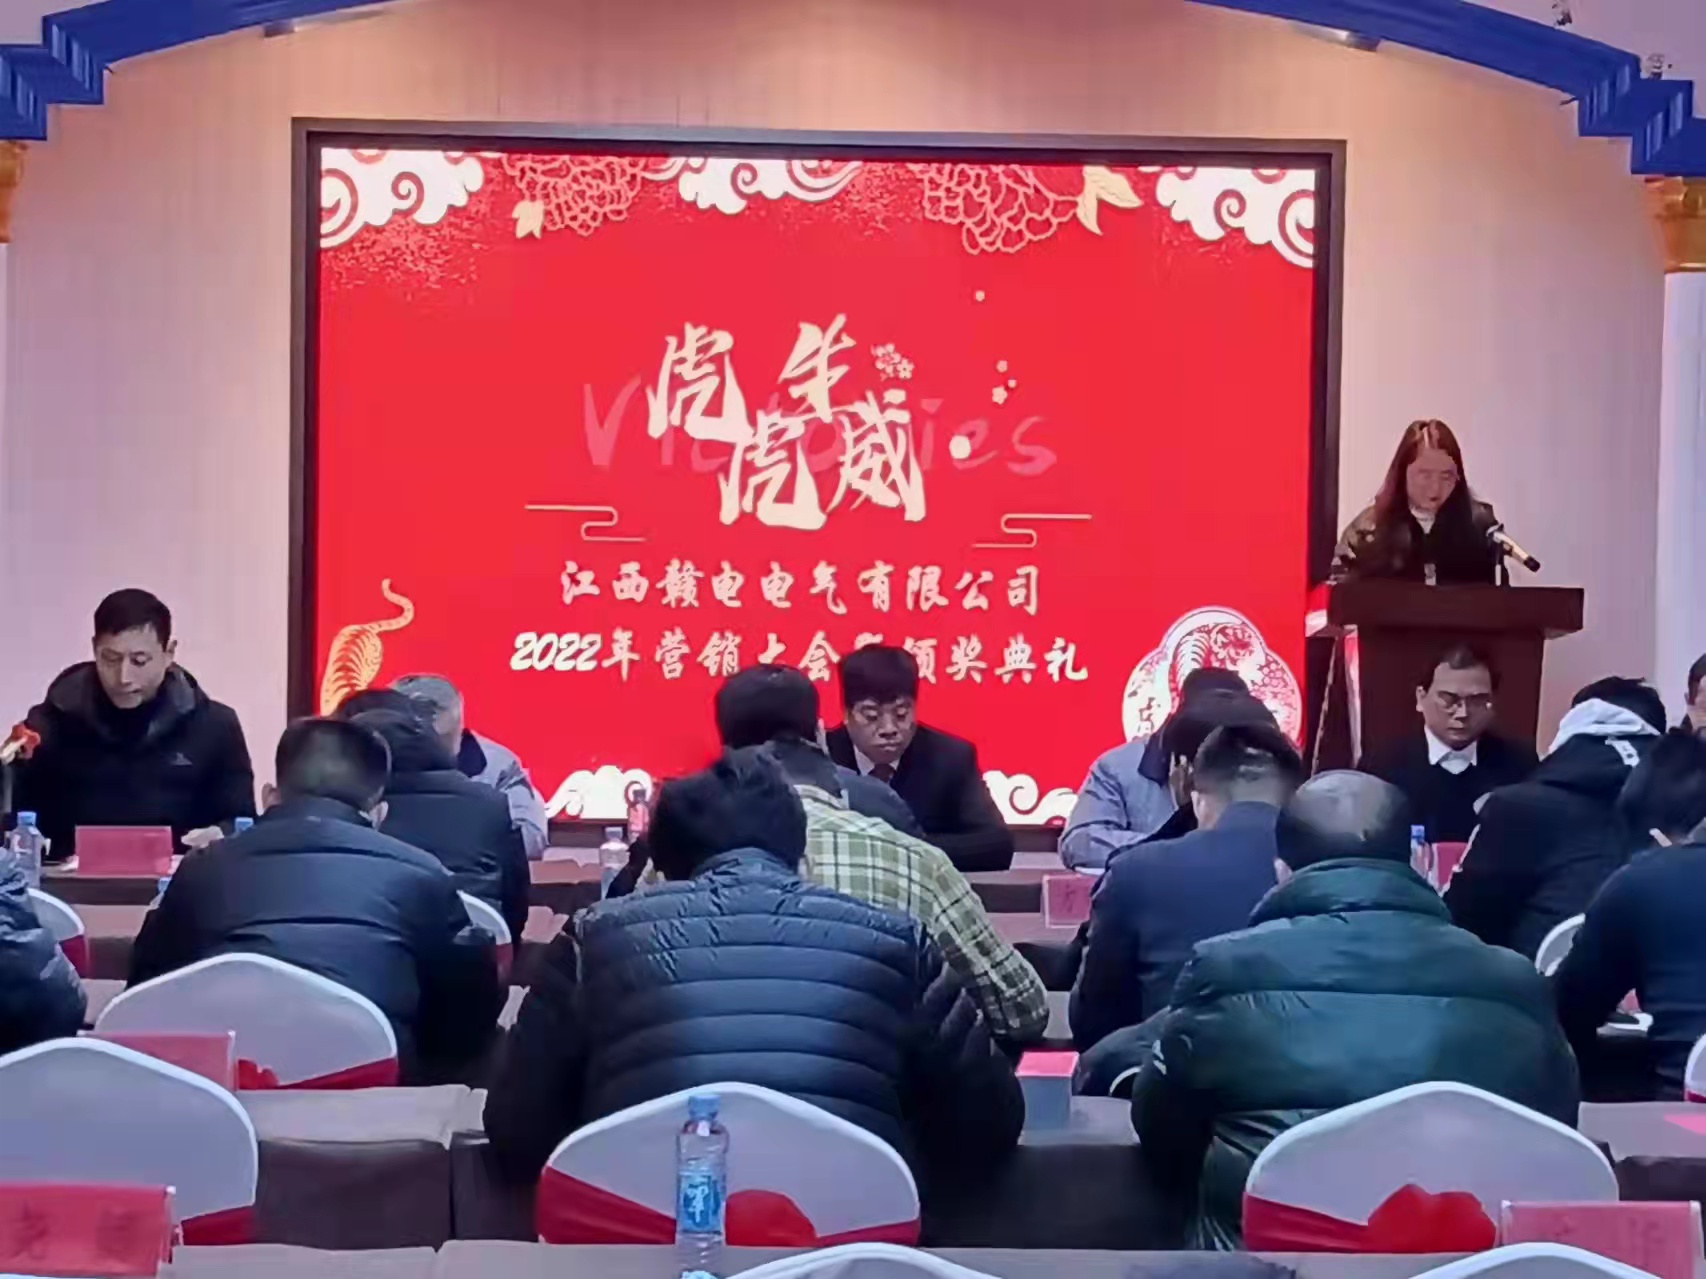 熱烈祝賀“江西贛電電氣有限公司2022年營銷大會”圓滿結束